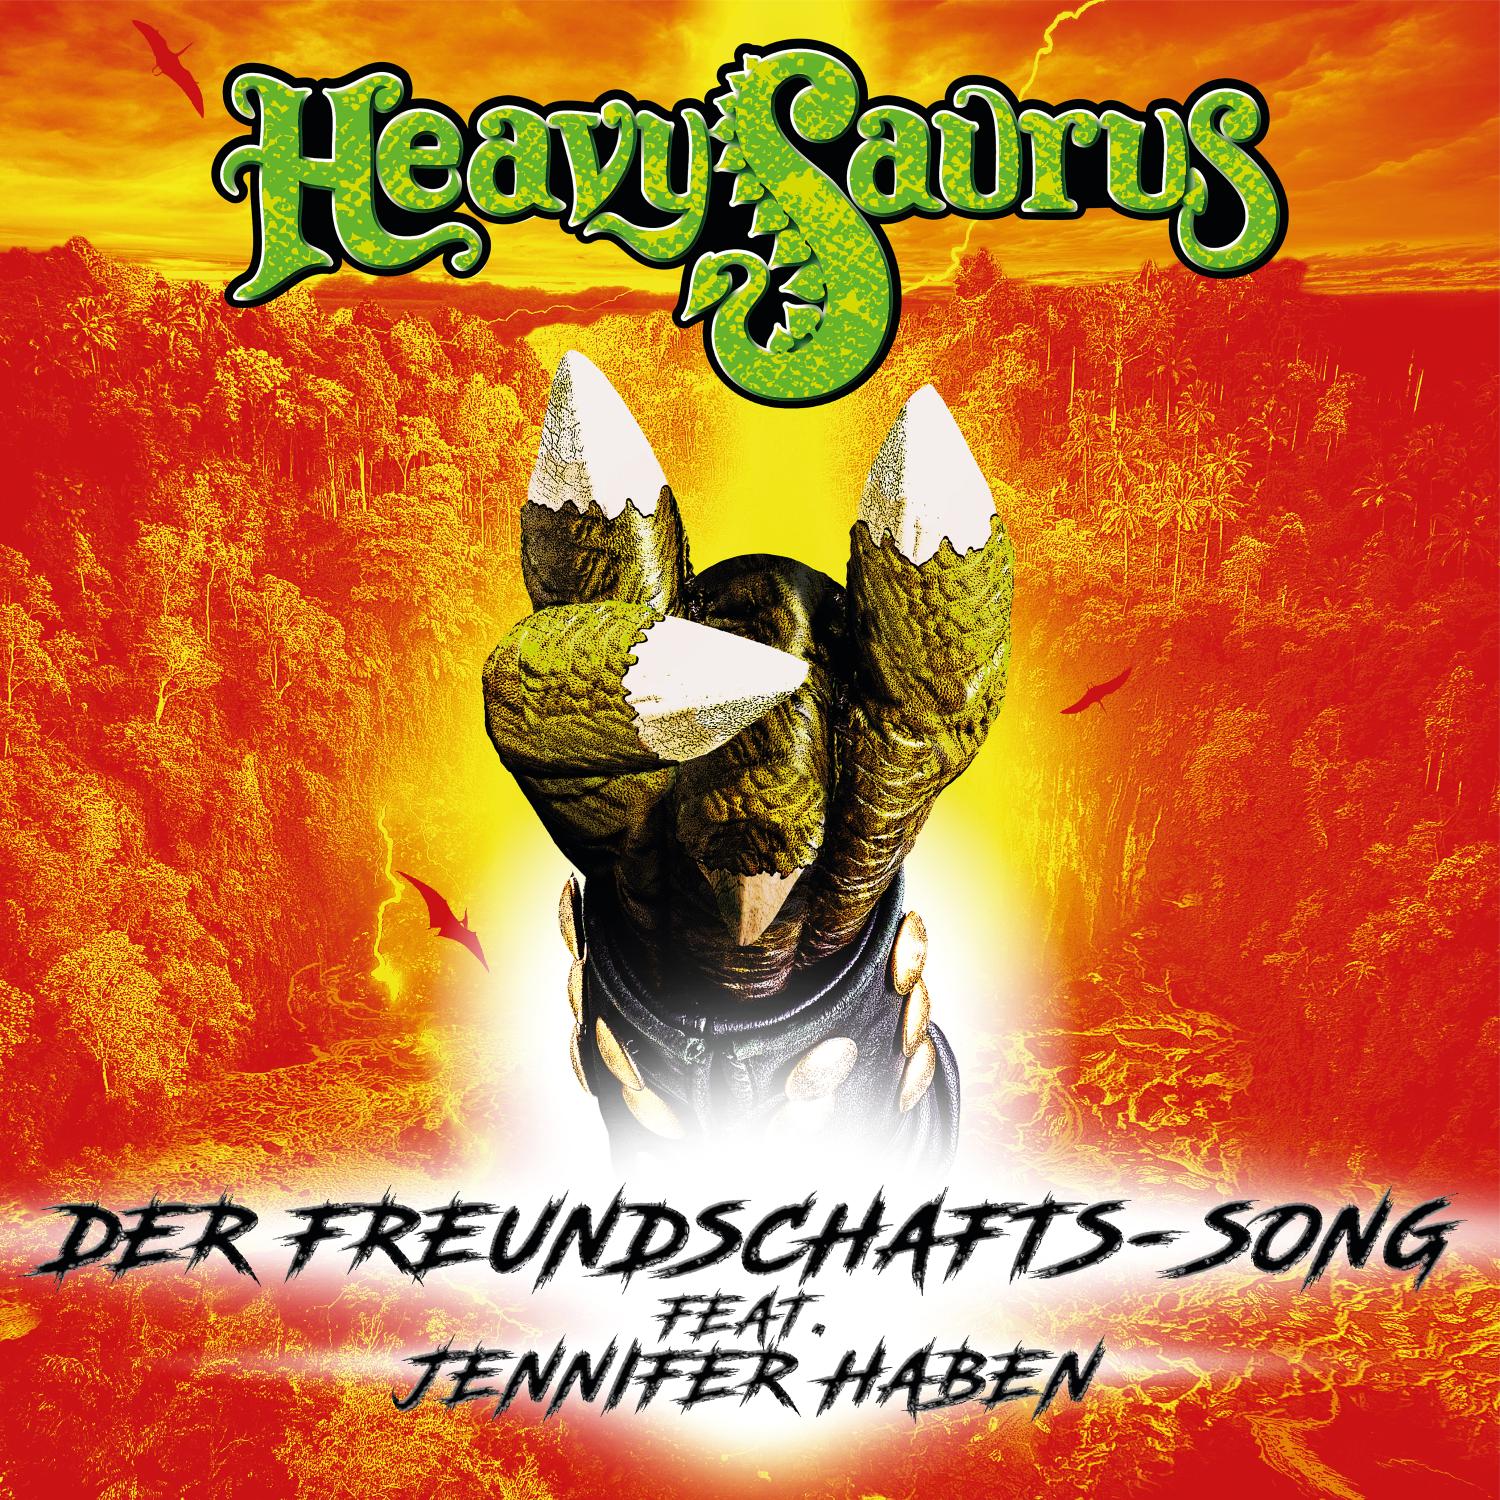 Heavysaurus - Der Freundschafts-Song feat. Jennifer Haben